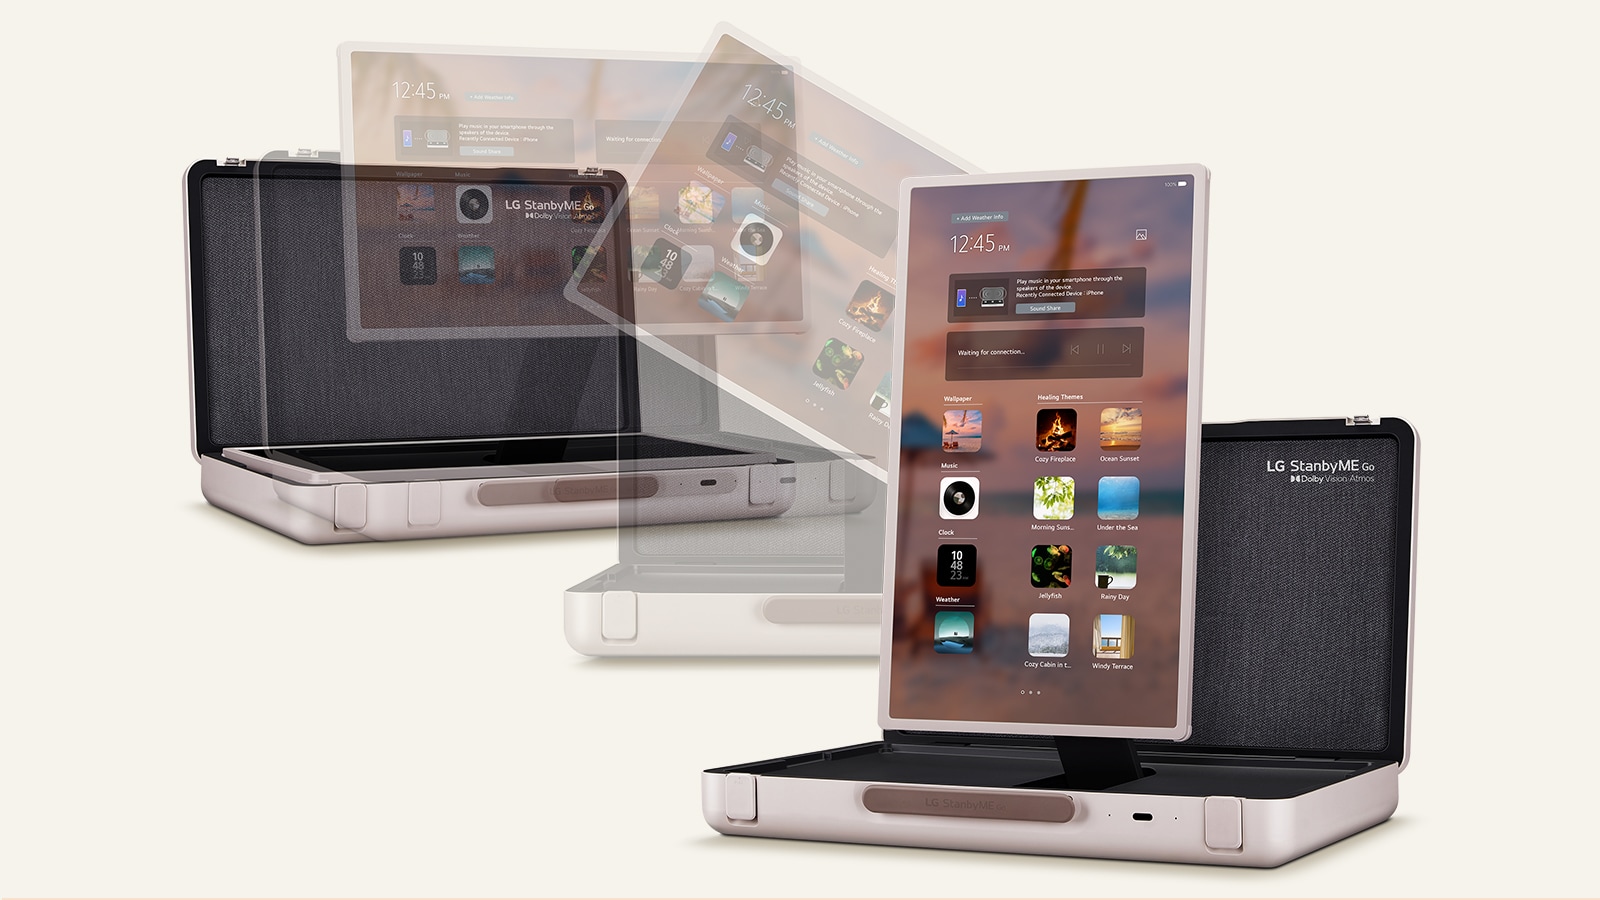 LG Stanbyme Go, el único Smart TV portátil y táctil<sup>(1)</sup